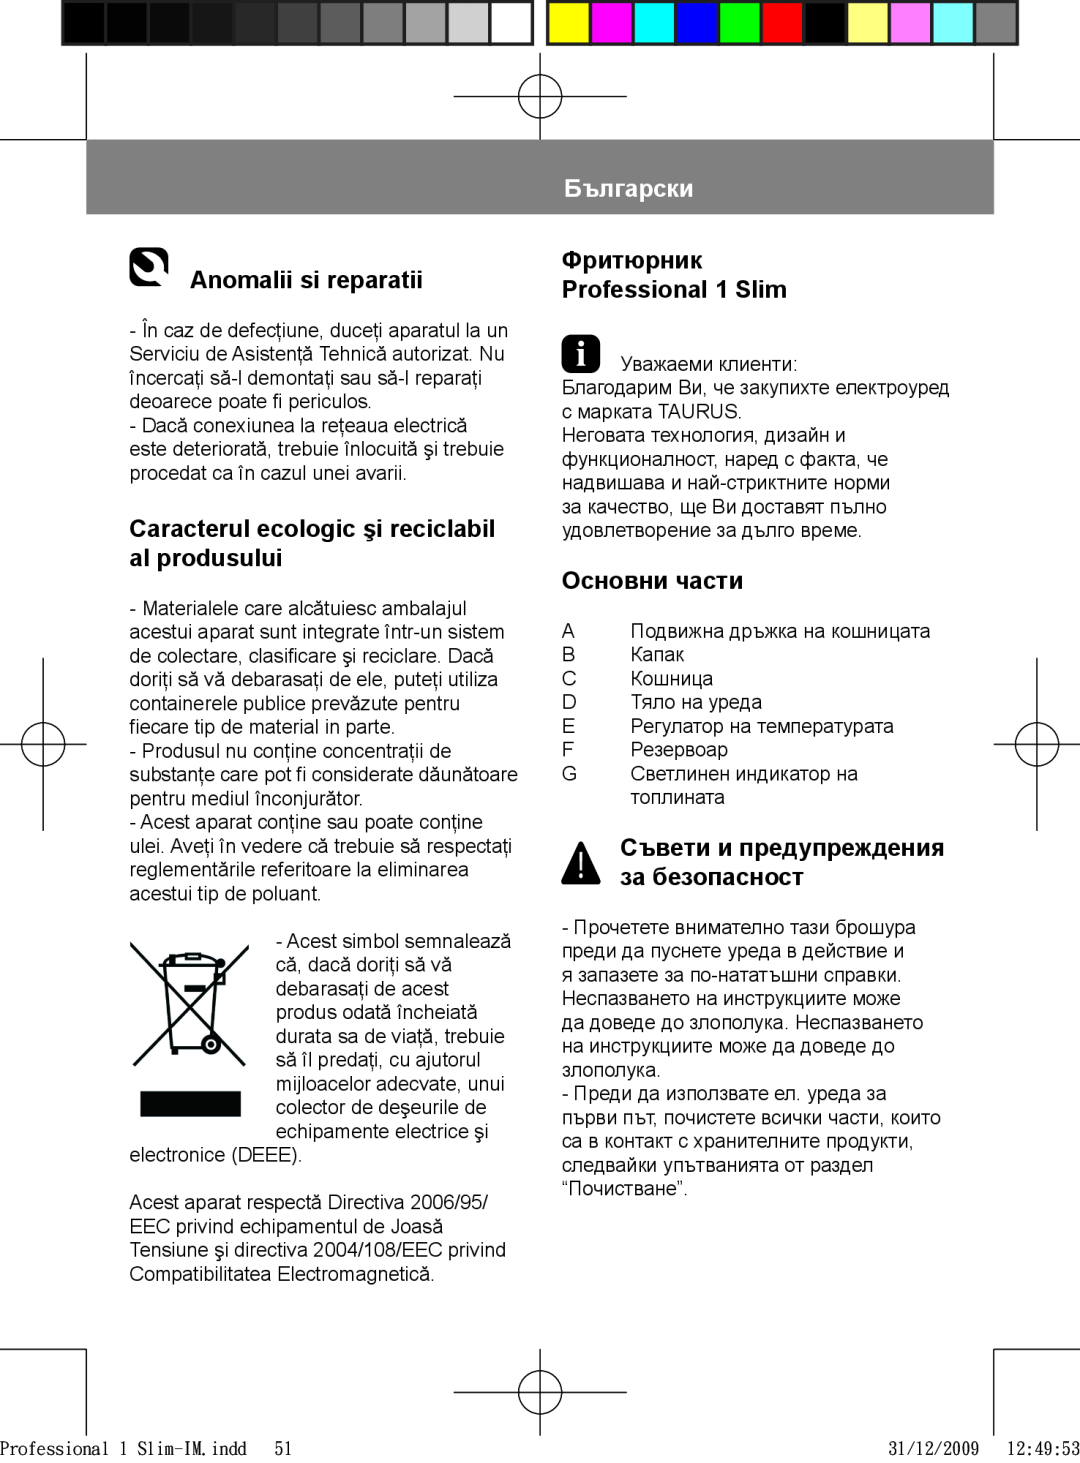 Taurus Group 1 Slim manual Anomalii si reparatii, Caracterul ecologic şi reciclabil al produsului, Български, Основни части 